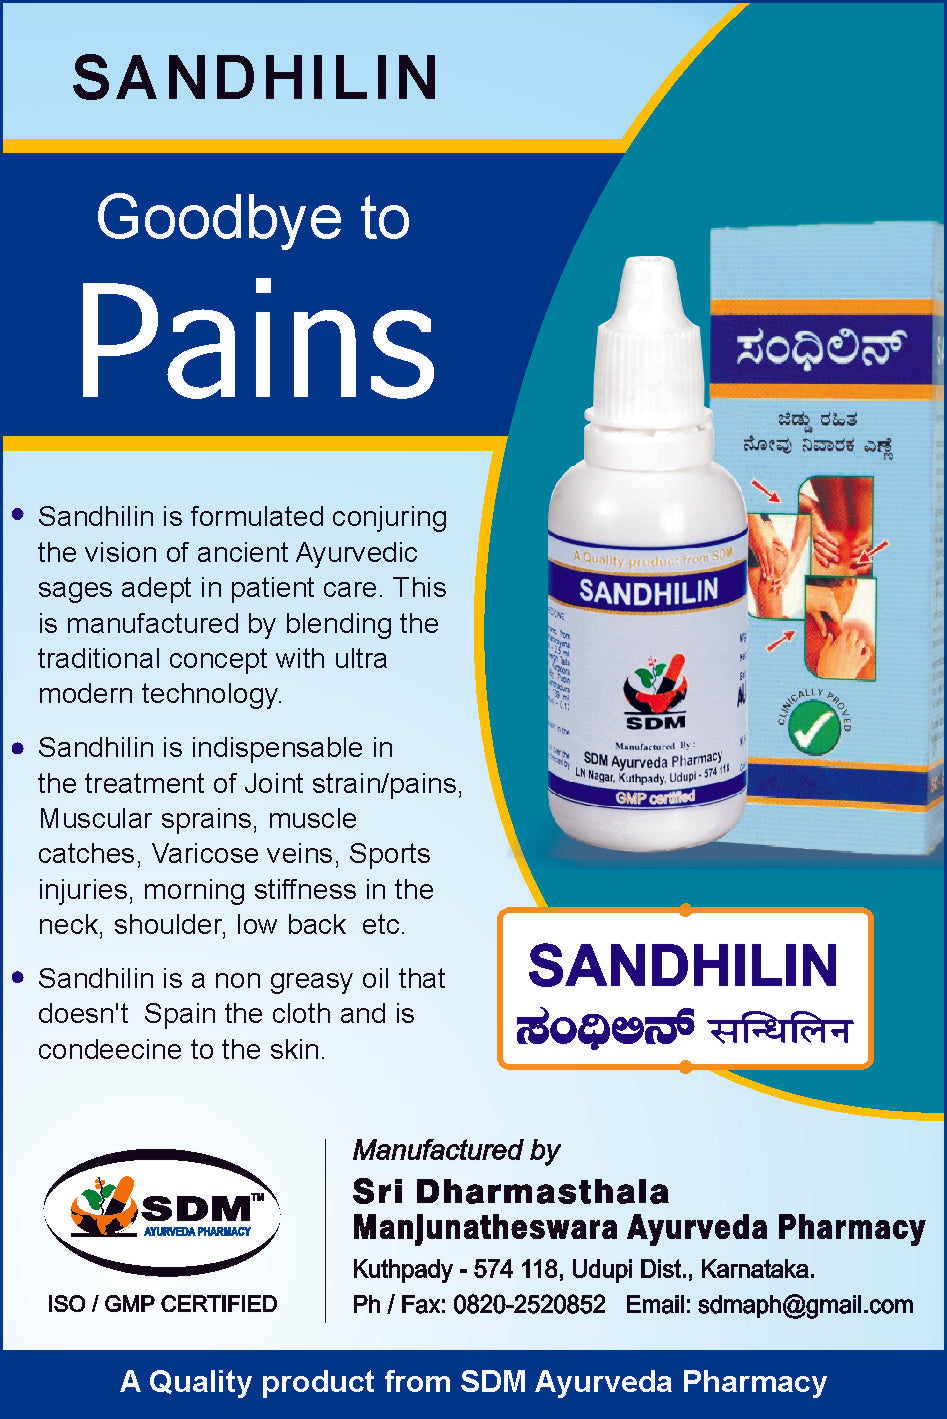 Sandhilin - Non greasy pain relief oil